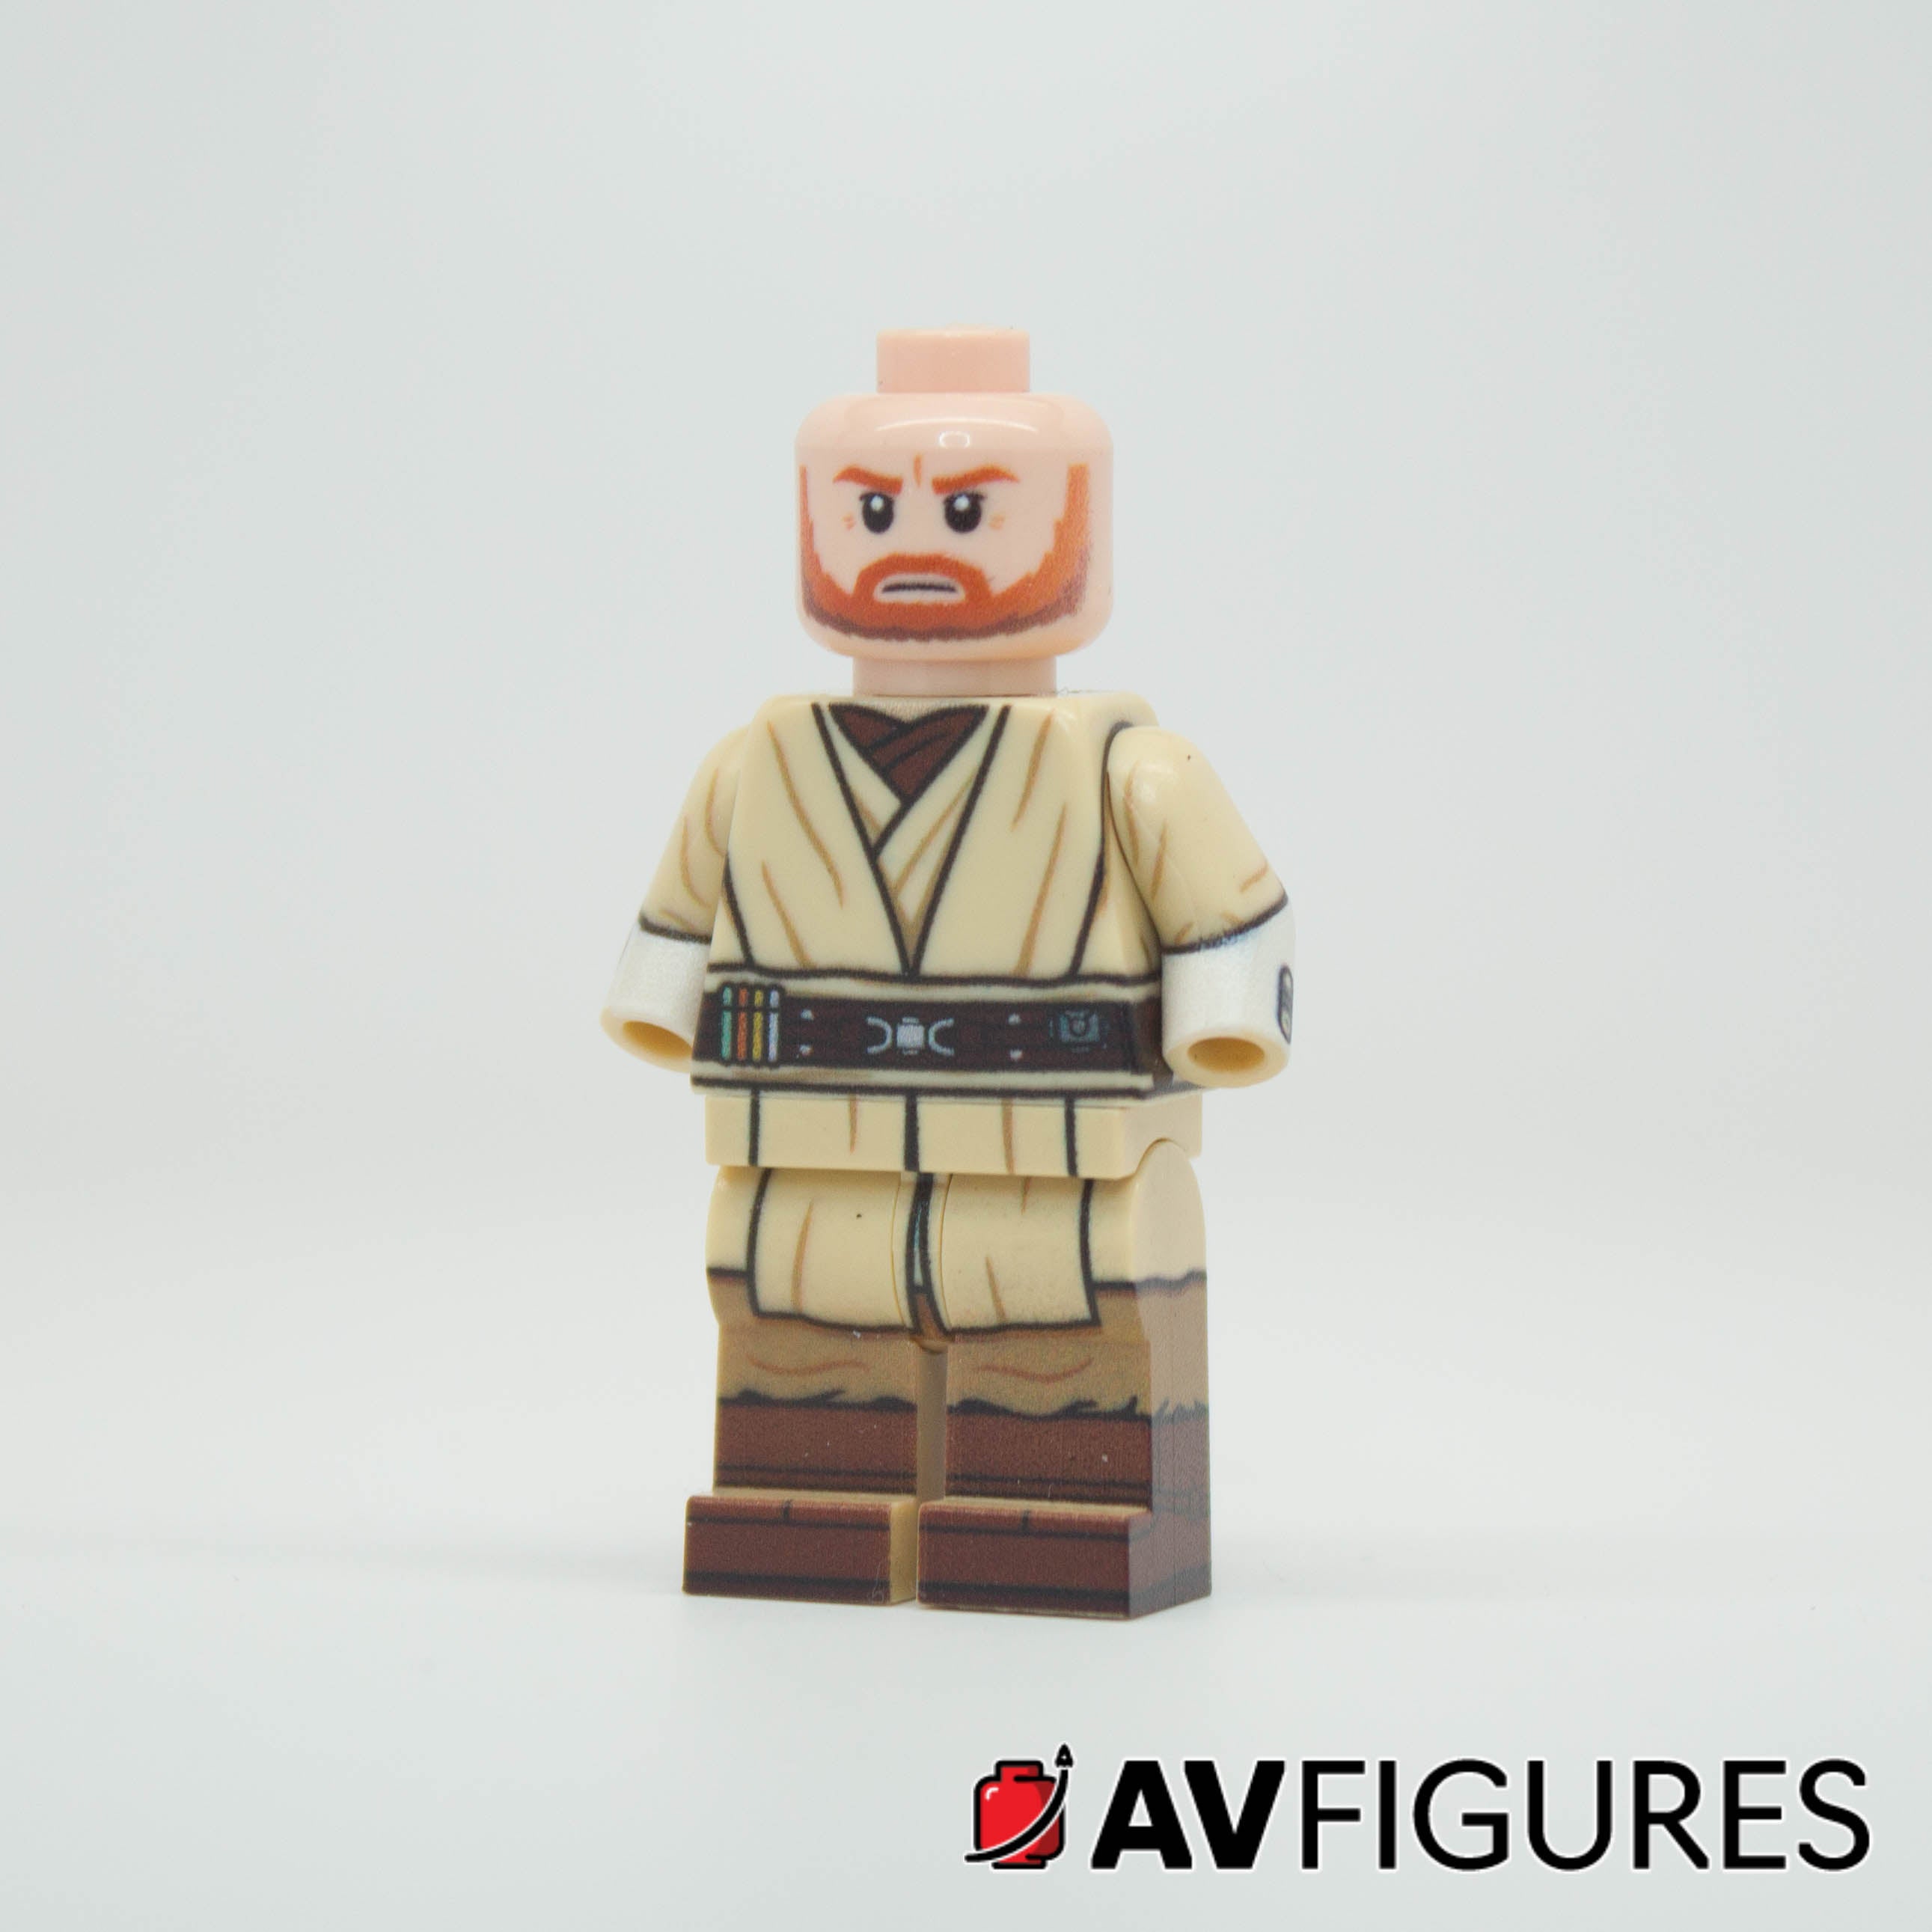 Obi-Wan Negotiator - B-GRADE MISPRINT FIGURE